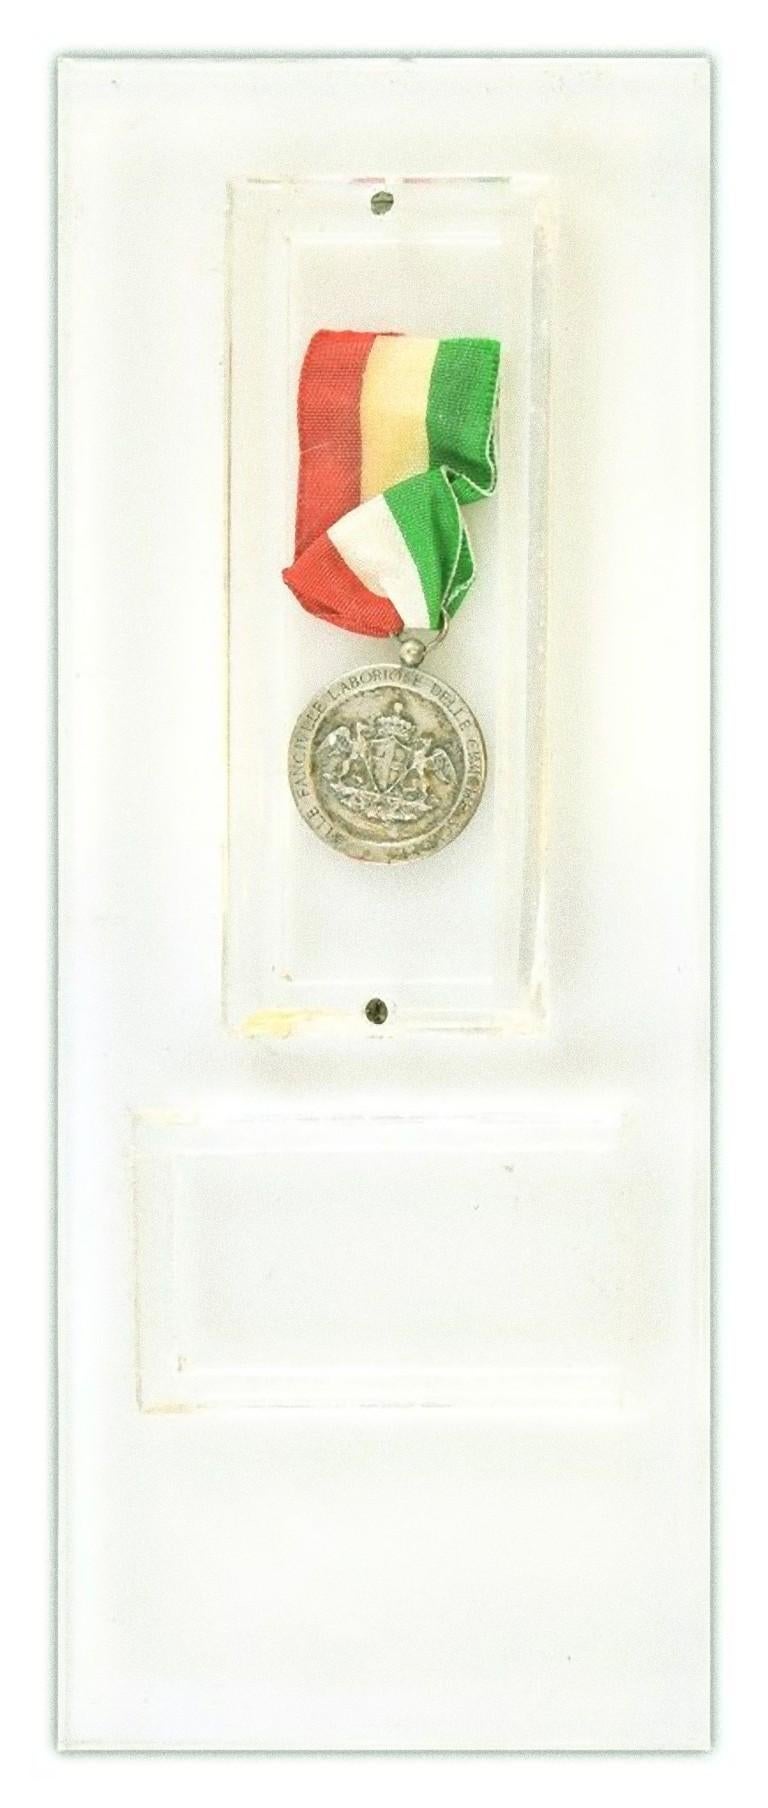 La médaille en argent Giuseppe Garibaldi est une médaille originale en argent réalisée en Italie par une manufacture italienne en 1910.

Cette médaille en argent célèbre Giuseppe Garibaldi par un portrait.
Sur l'autre face, un blason et la